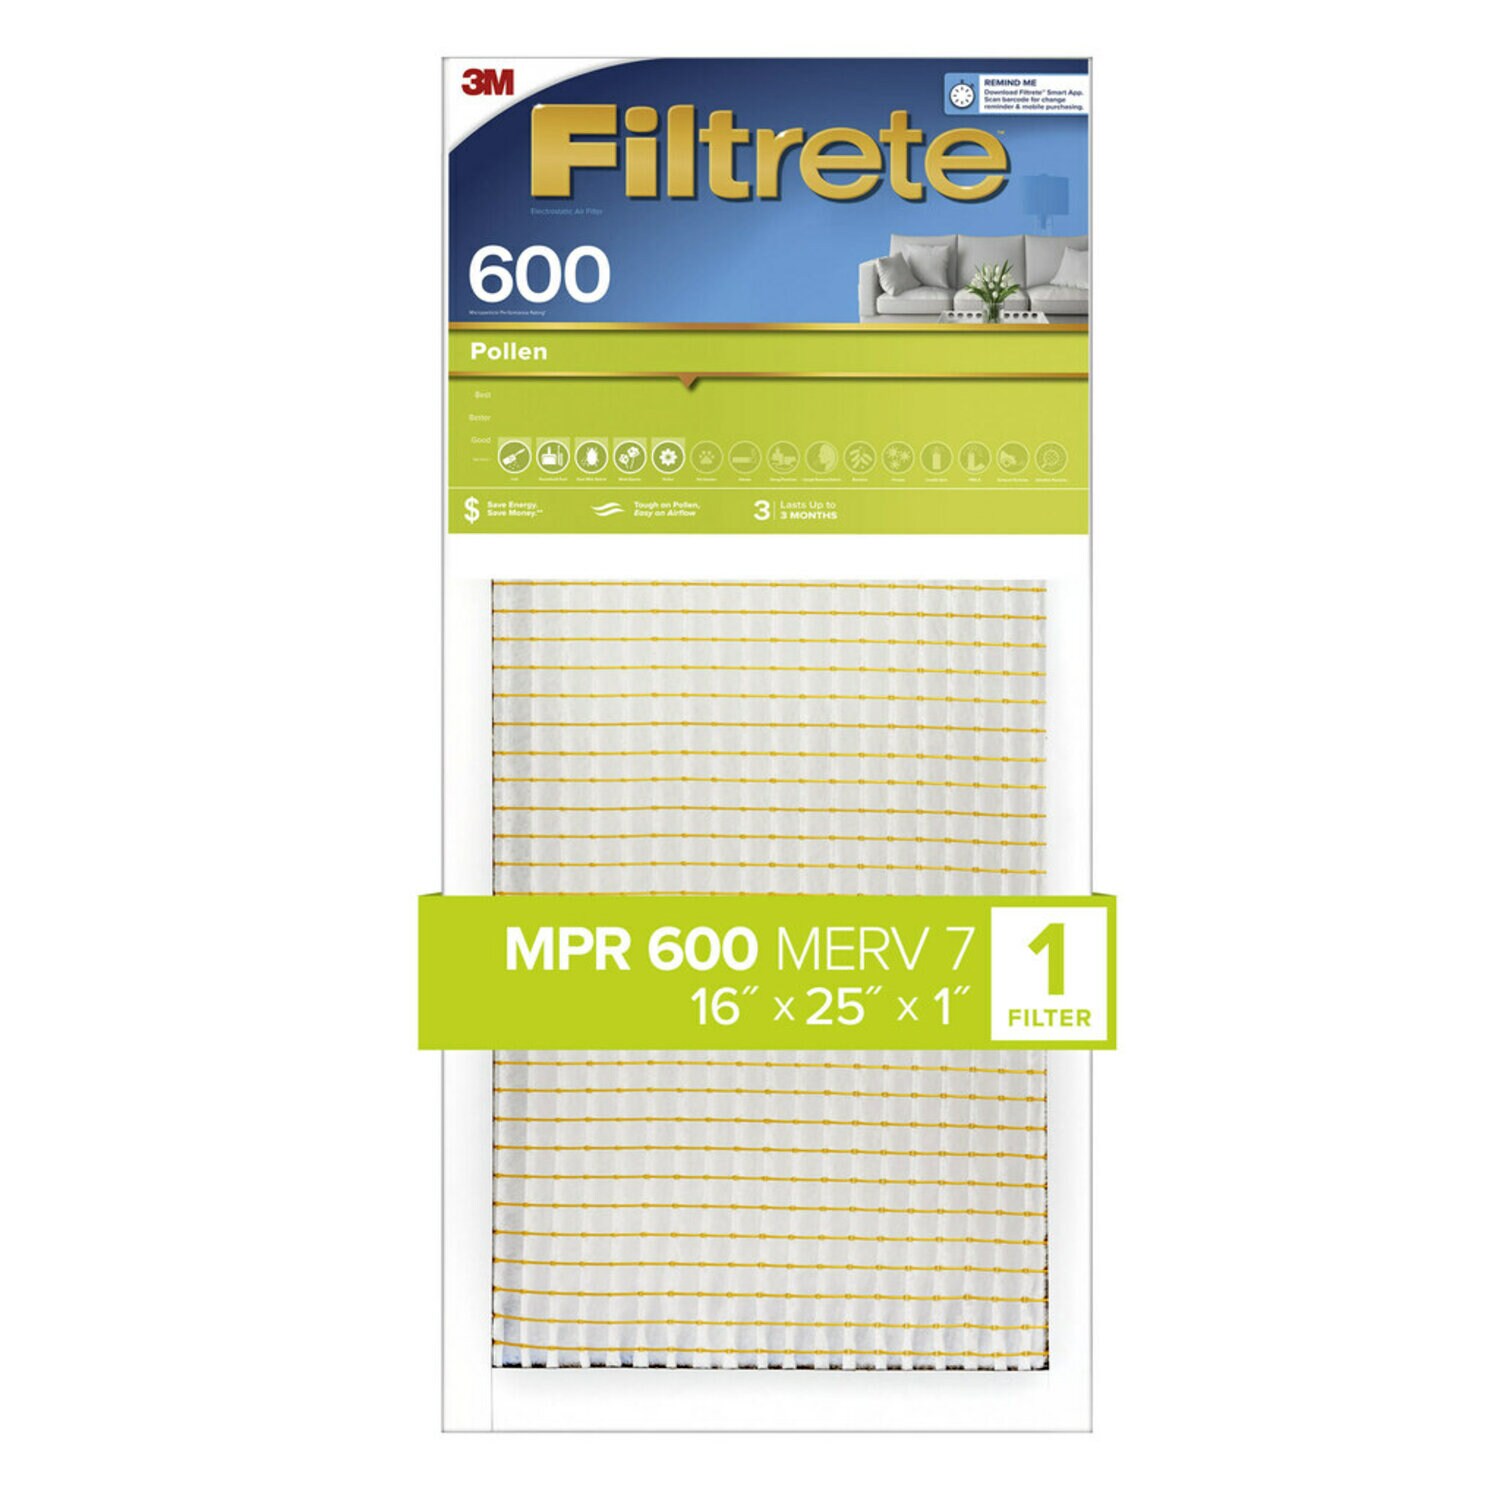 7100183959 - Filtrete Pollen Air Filter, 600 MPR, 9831-4, 16 in x 25 in x 1 in (40.6
cm x 63.5 cm x 2.54 cm)